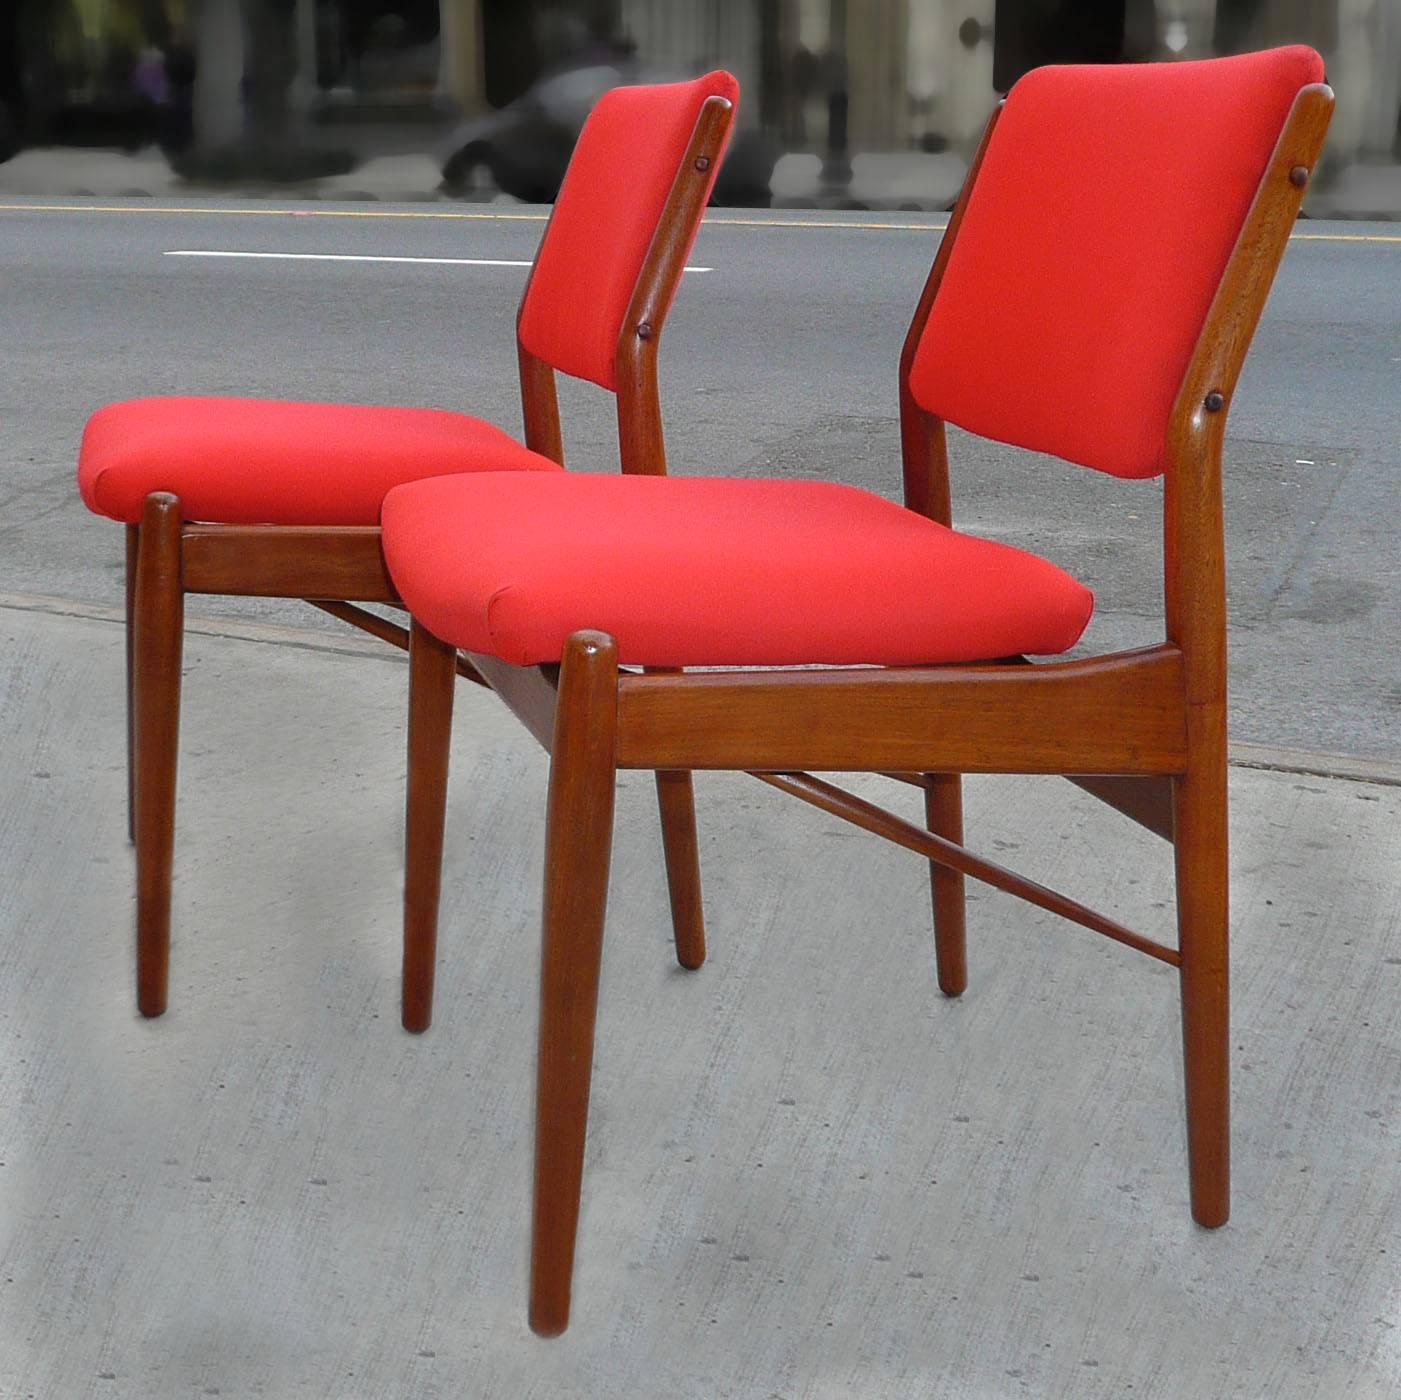 Set of four teak, Danish modern, teak dining chairs by Finn Juhl are newly upholstered in Kravet’s Soleil Tomato linen fabric.